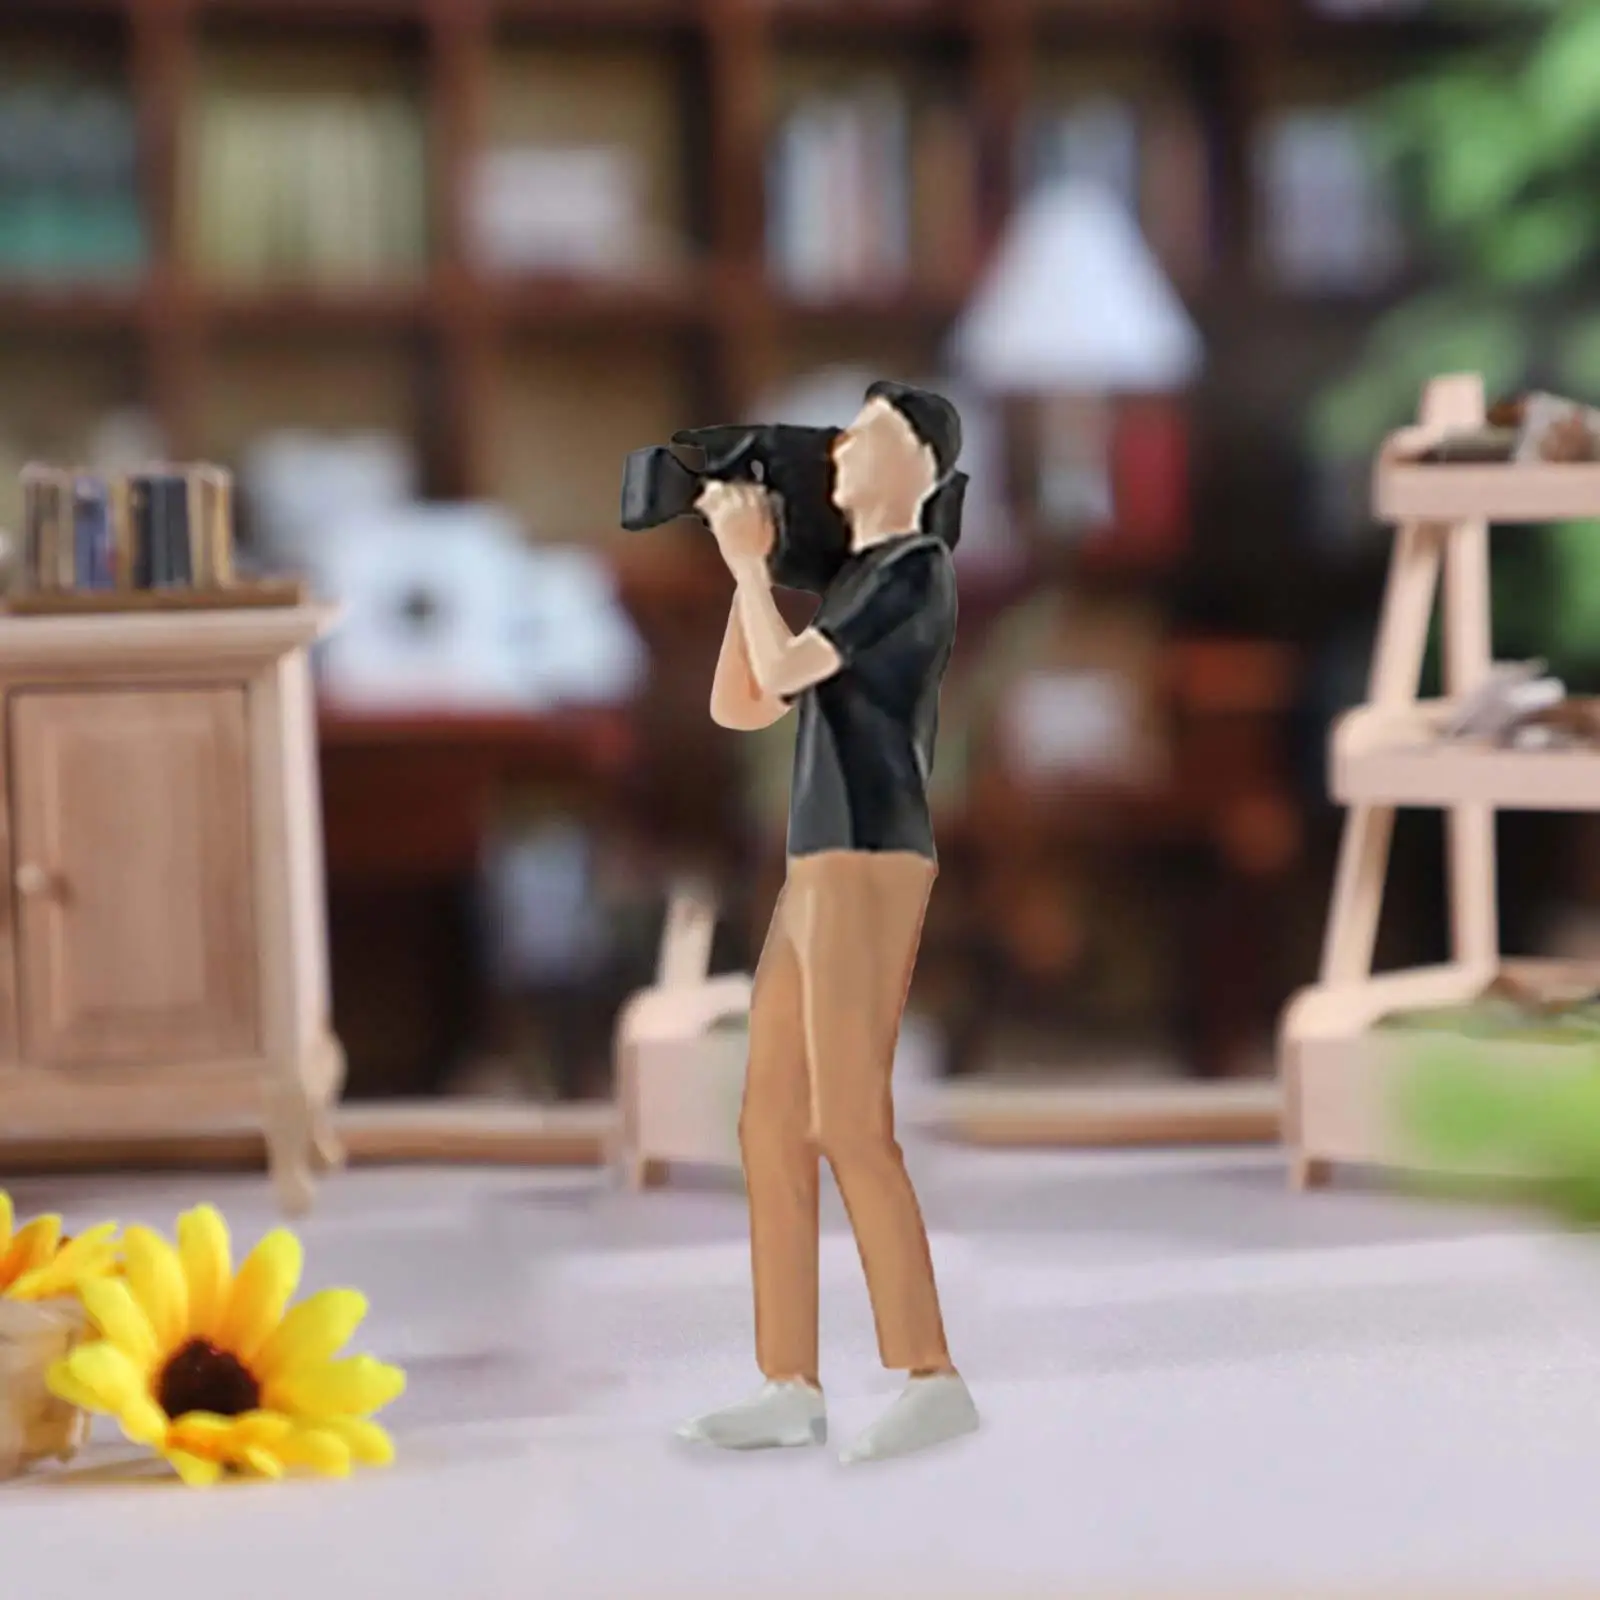 Mini 1/64 Scale Model Toy Miniature Scenes Desk Decoration Simulation Decor